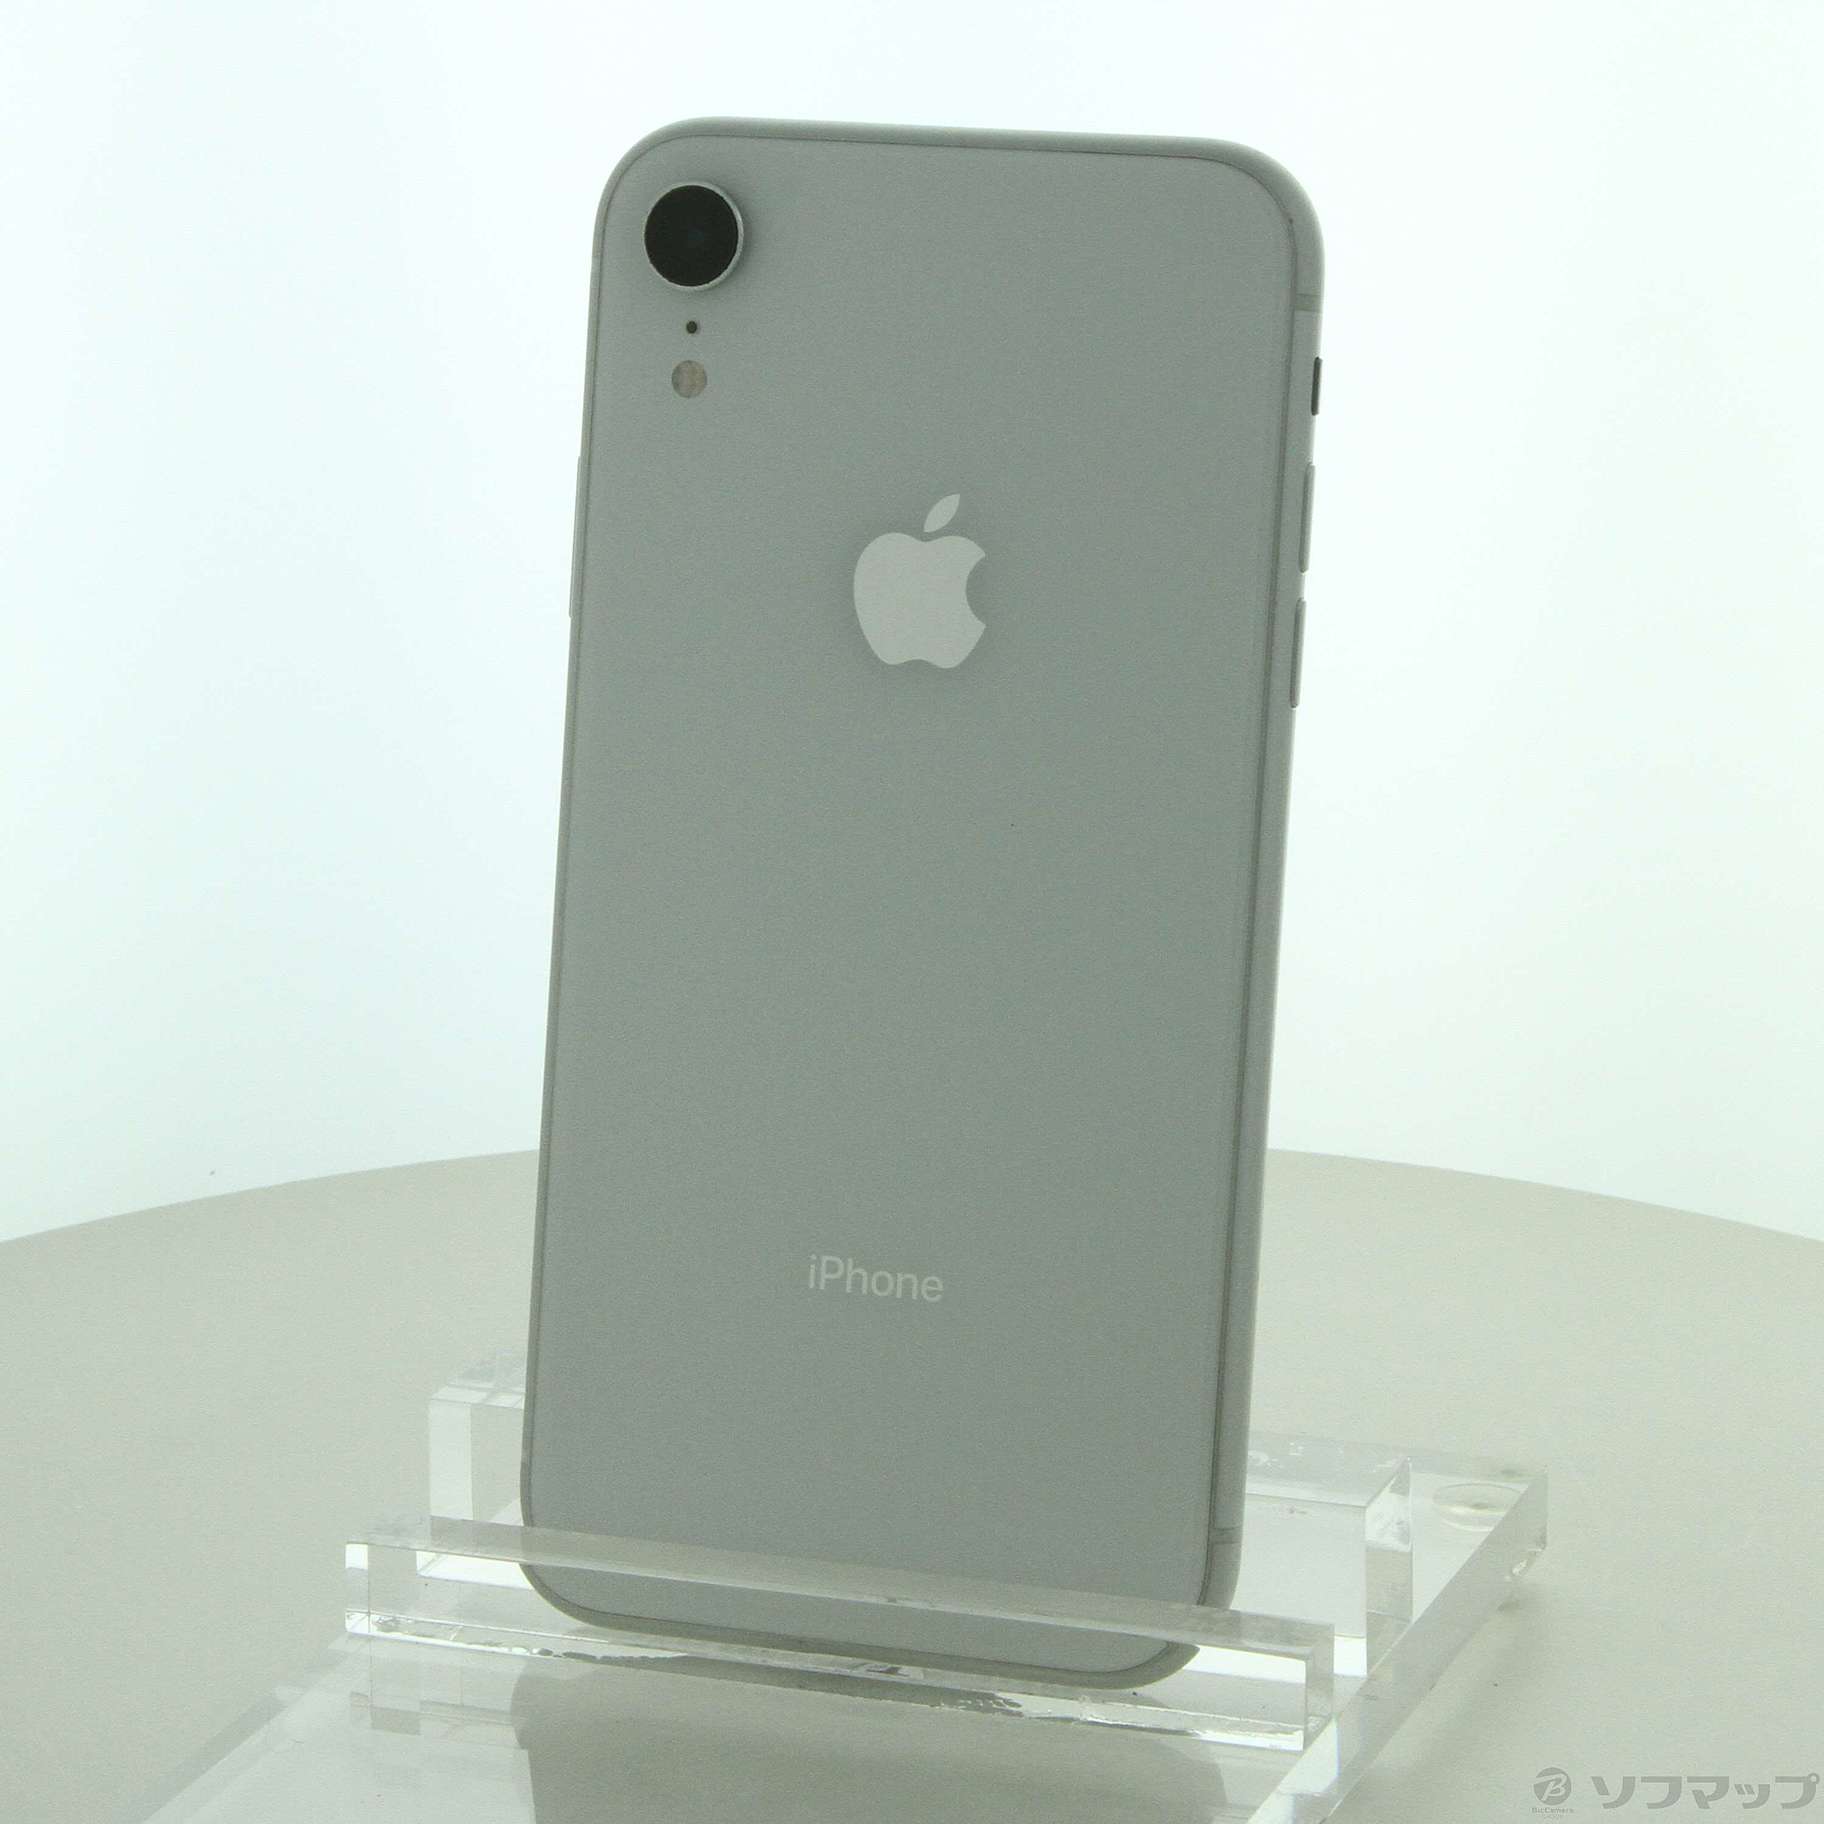 iPhone XR White 64 GB SIMフリー 展示品 www.krzysztofbialy.com